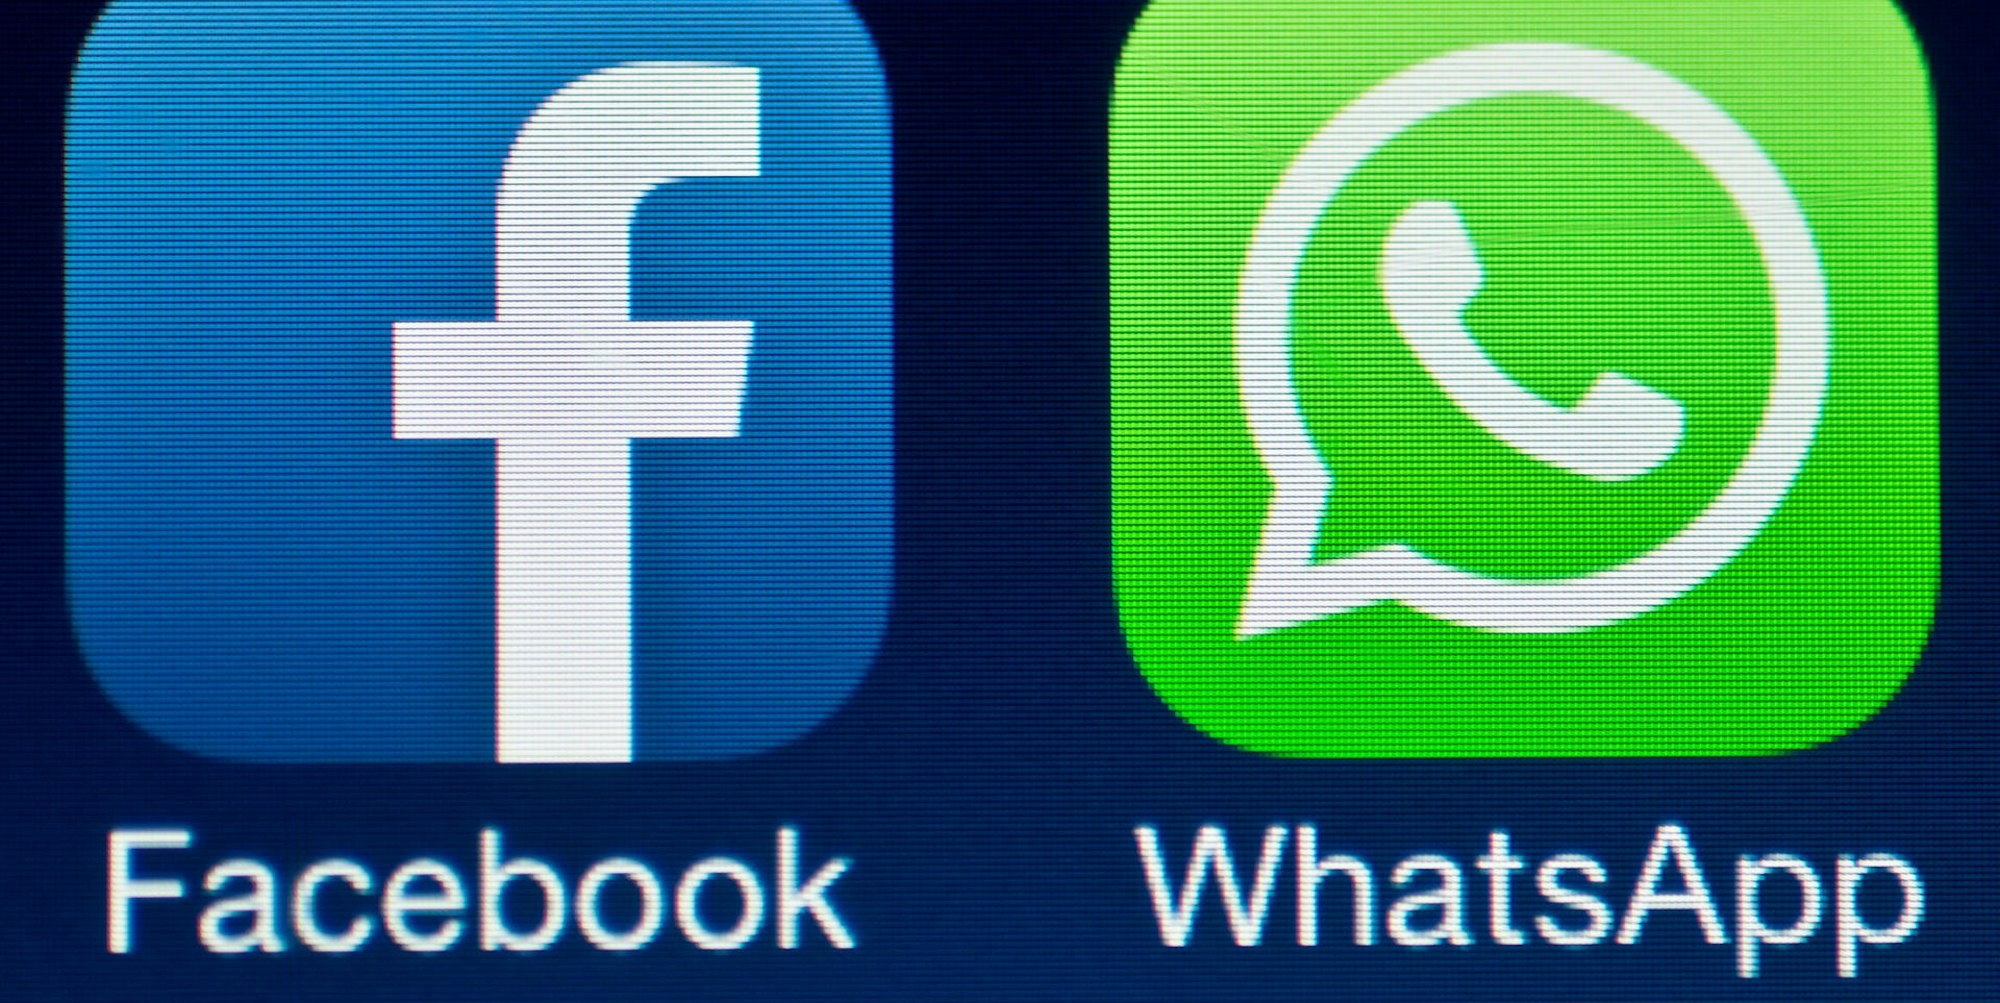 Facebook und Whatsapp